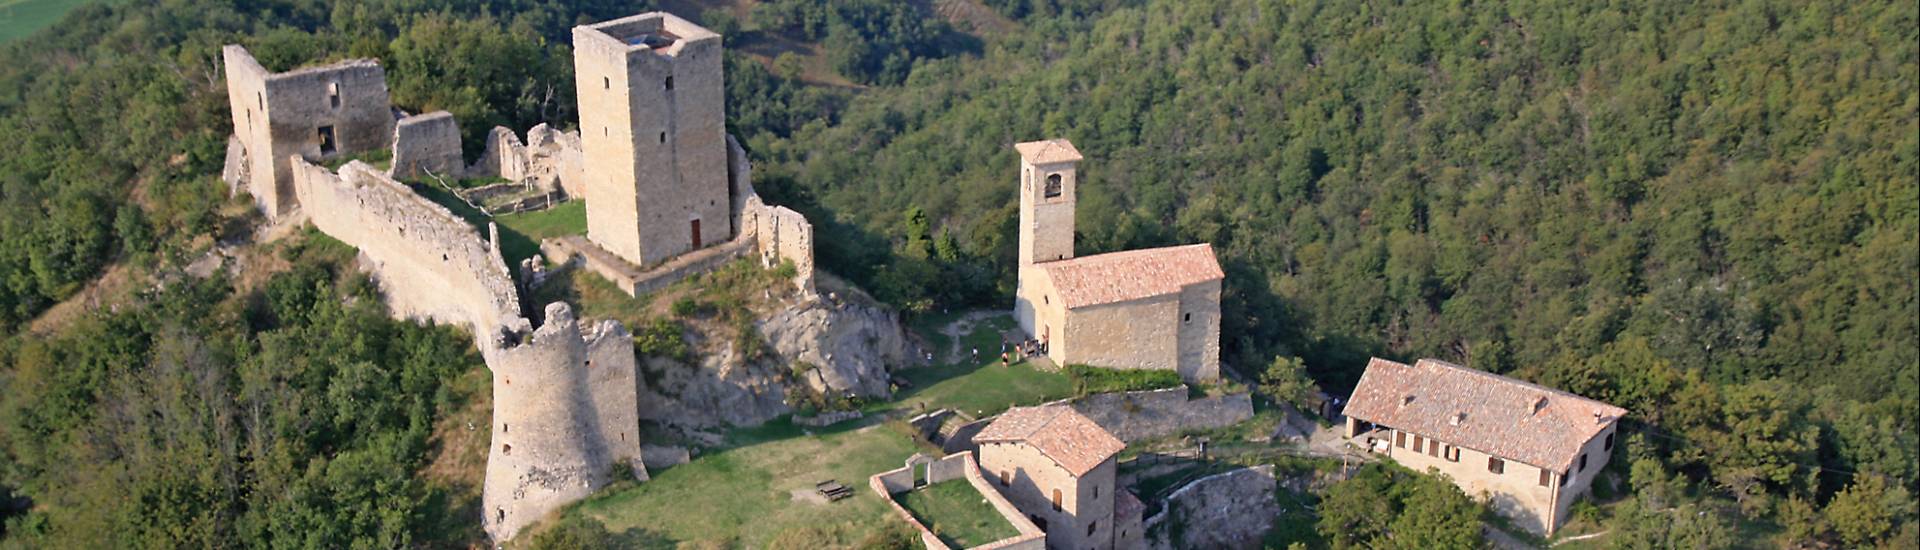 Castello di Carpineti (Carpineti Castle) - complesso del castello di carpineti photo credits: |sandro beretti| - sandro beretti